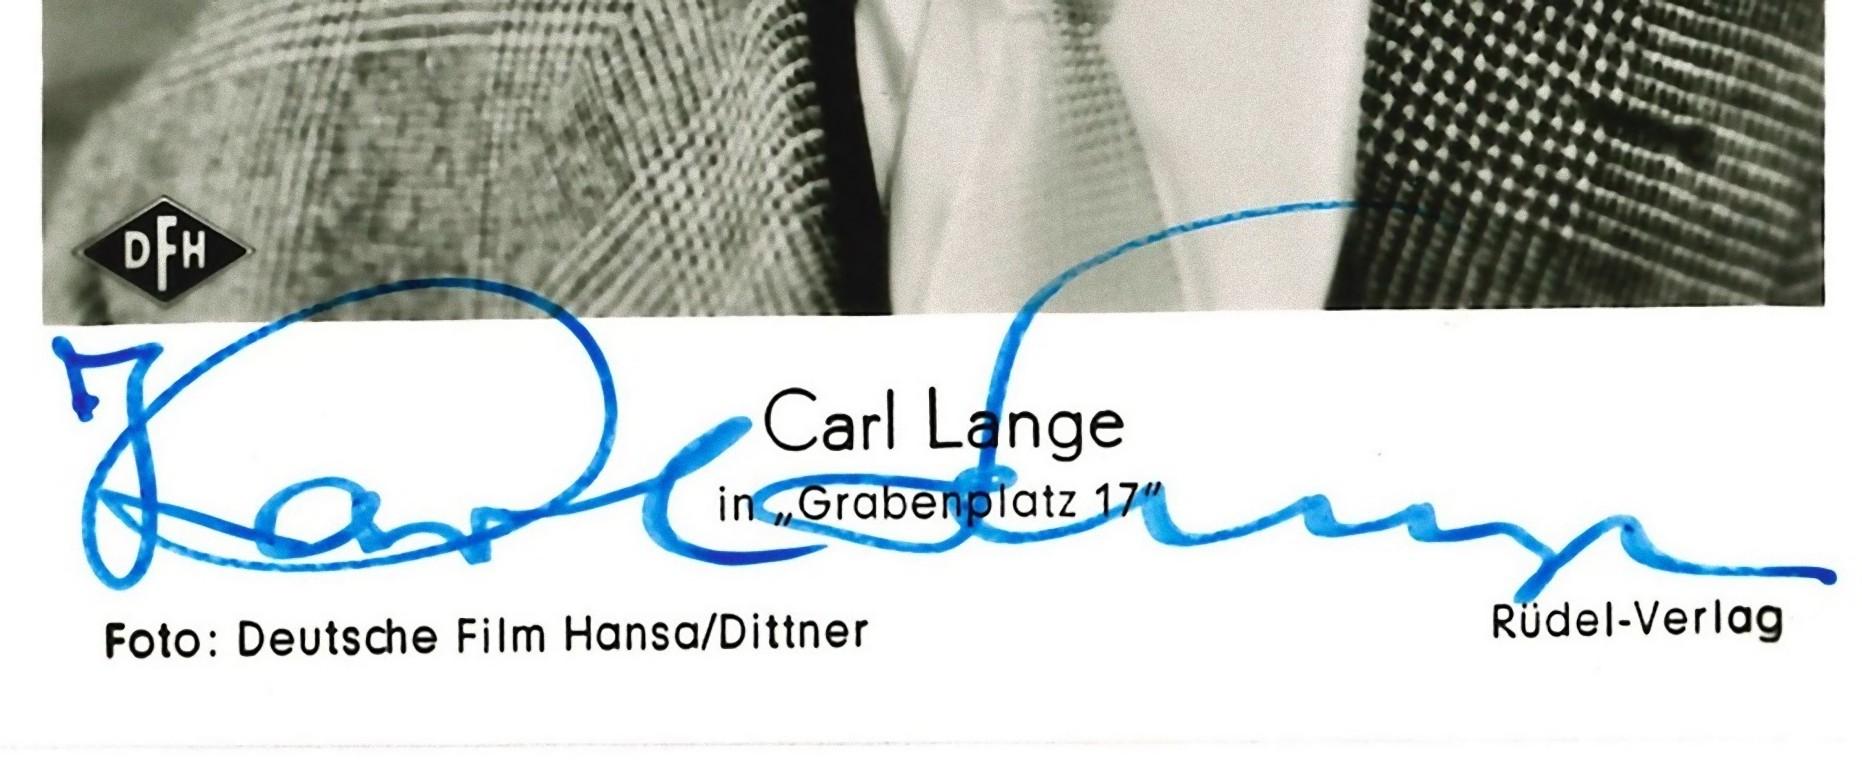 Autographed Portrait of Carl Lange - Vintage b/w Postcard -1960s - Photograph by Unknown